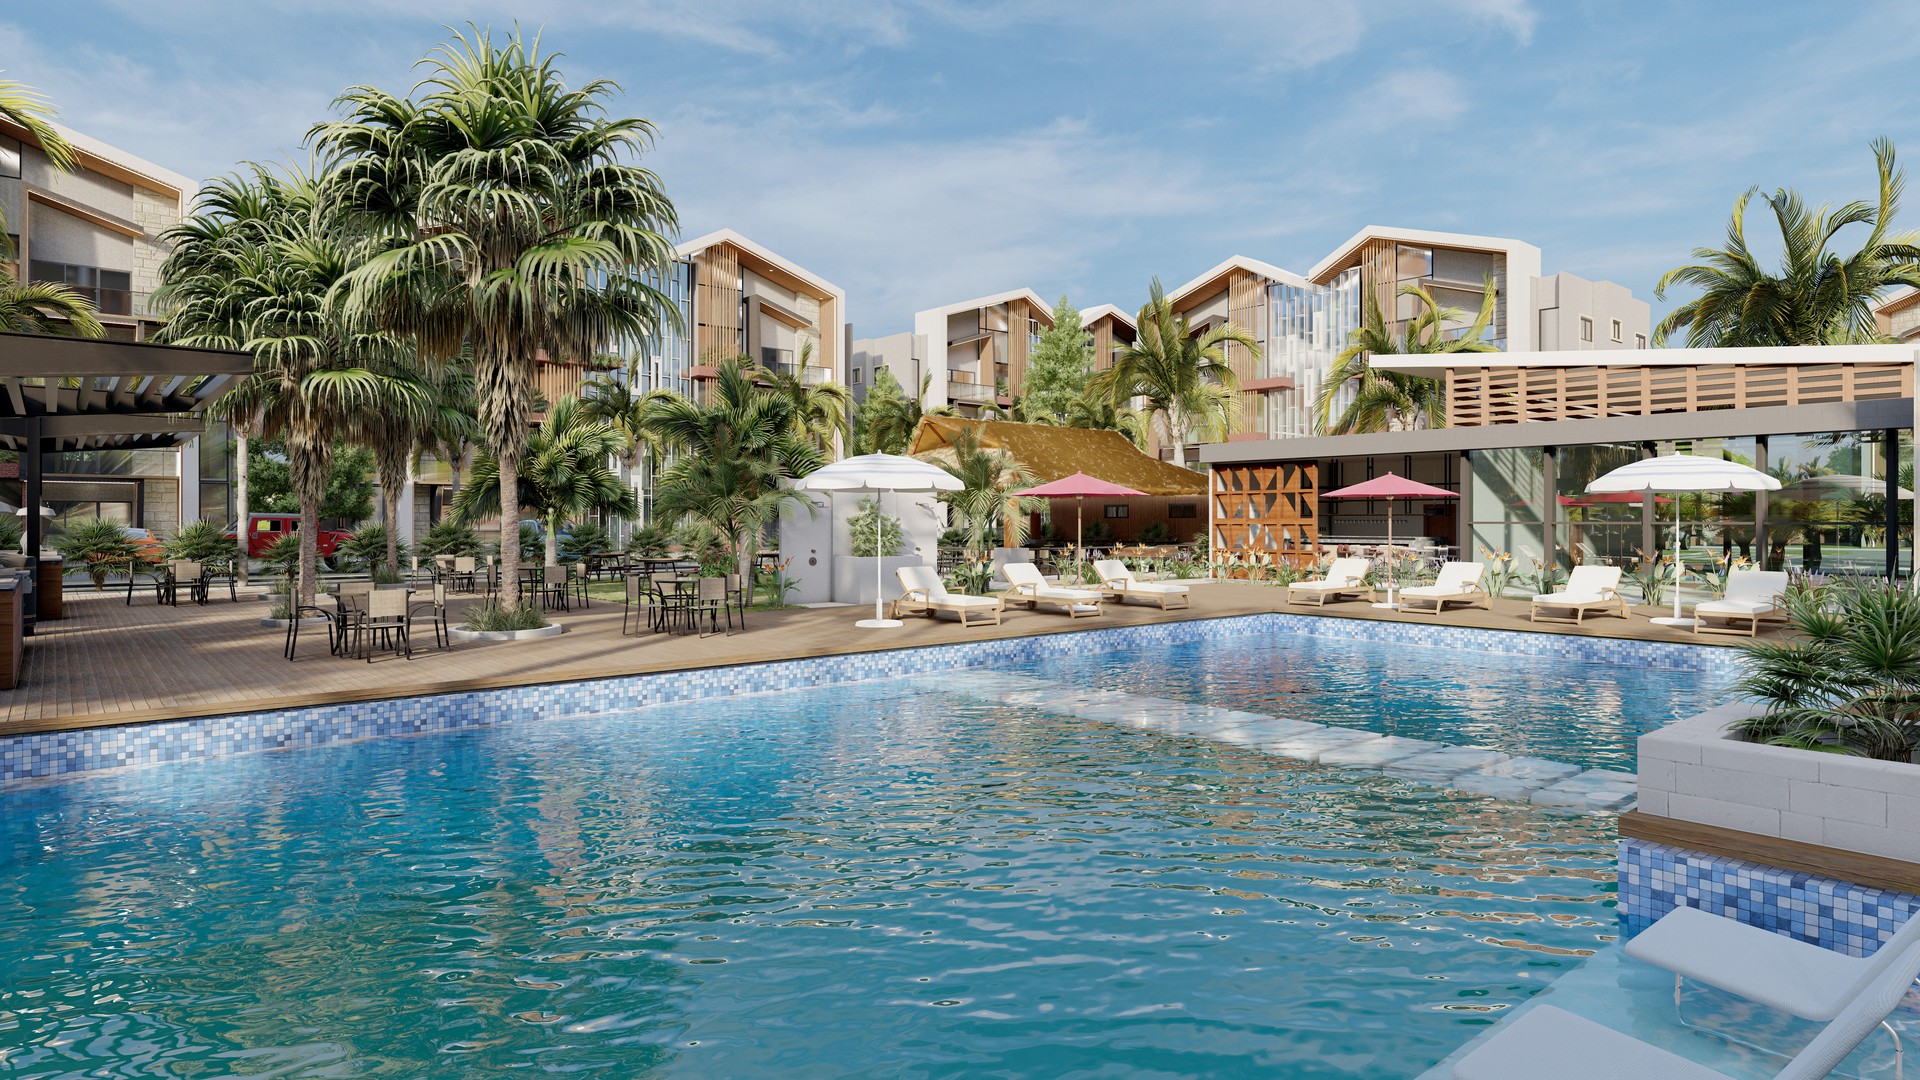 apartamentos - Apartamentos Turísticos en Jarabacoa, con piscina y plaza comercial  0